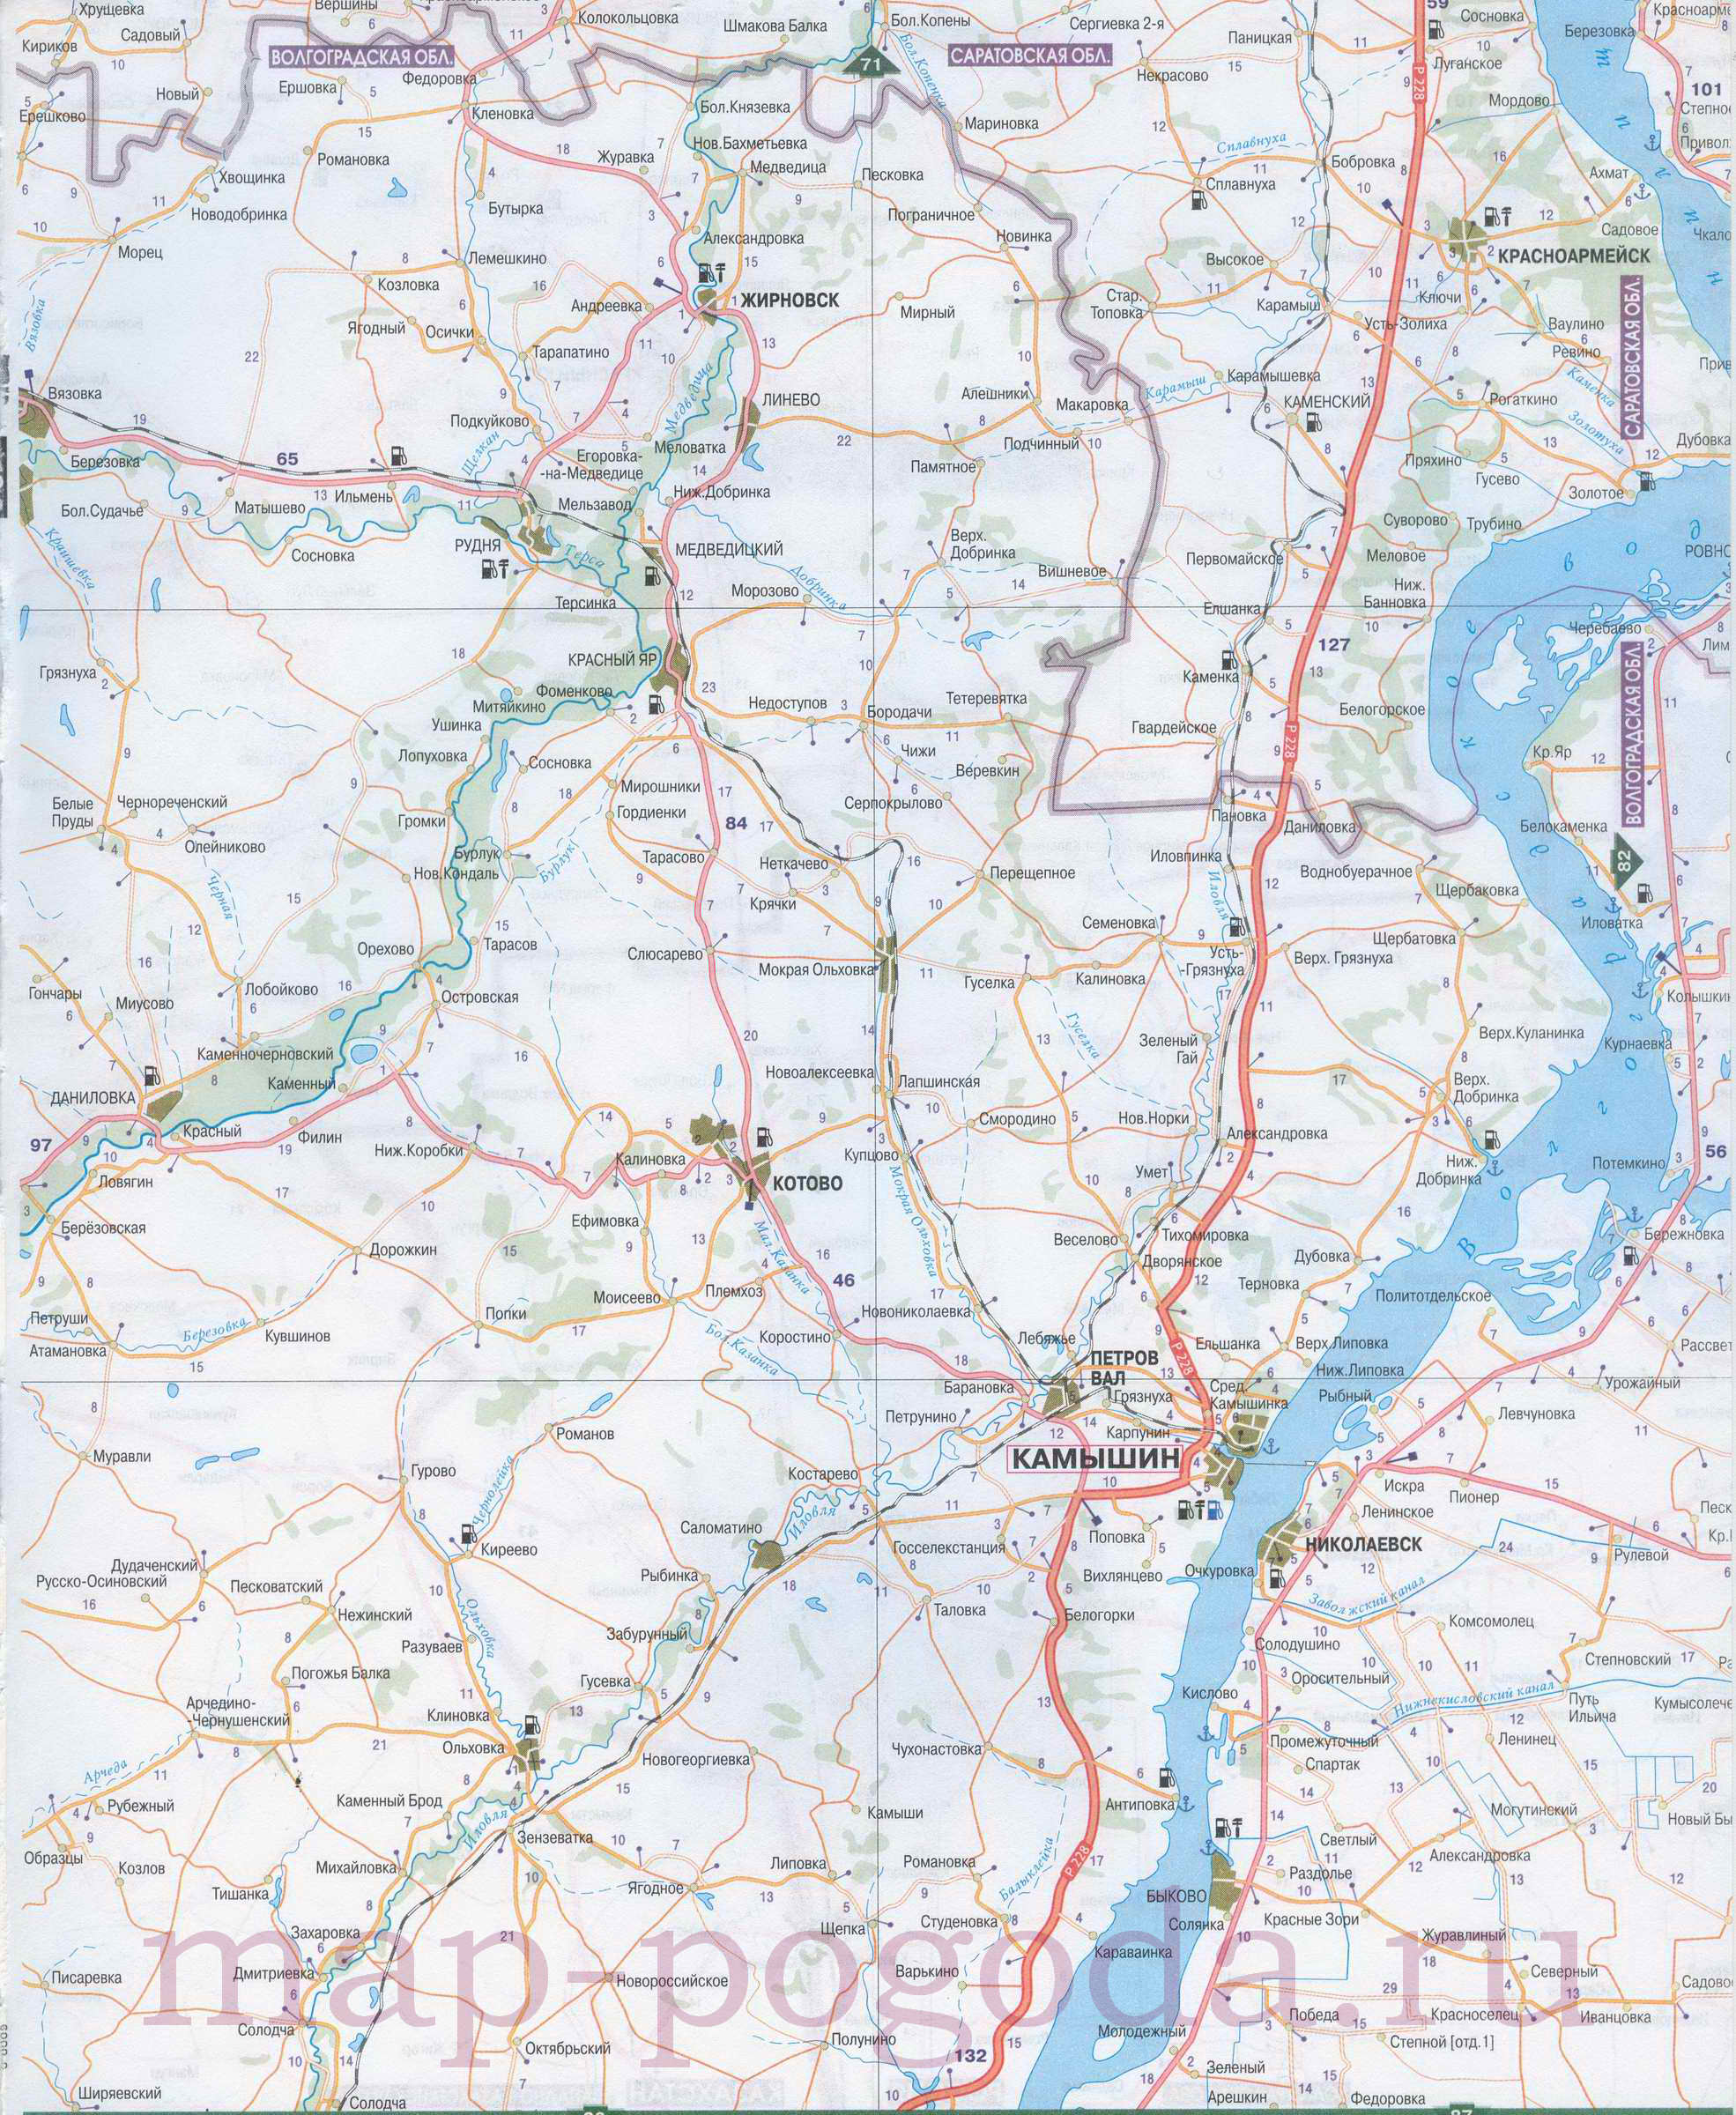 Карта Волгоградской области. Карта автомобильных дорог севера Волгоградской области масштаба 1см:7км, B0 - 